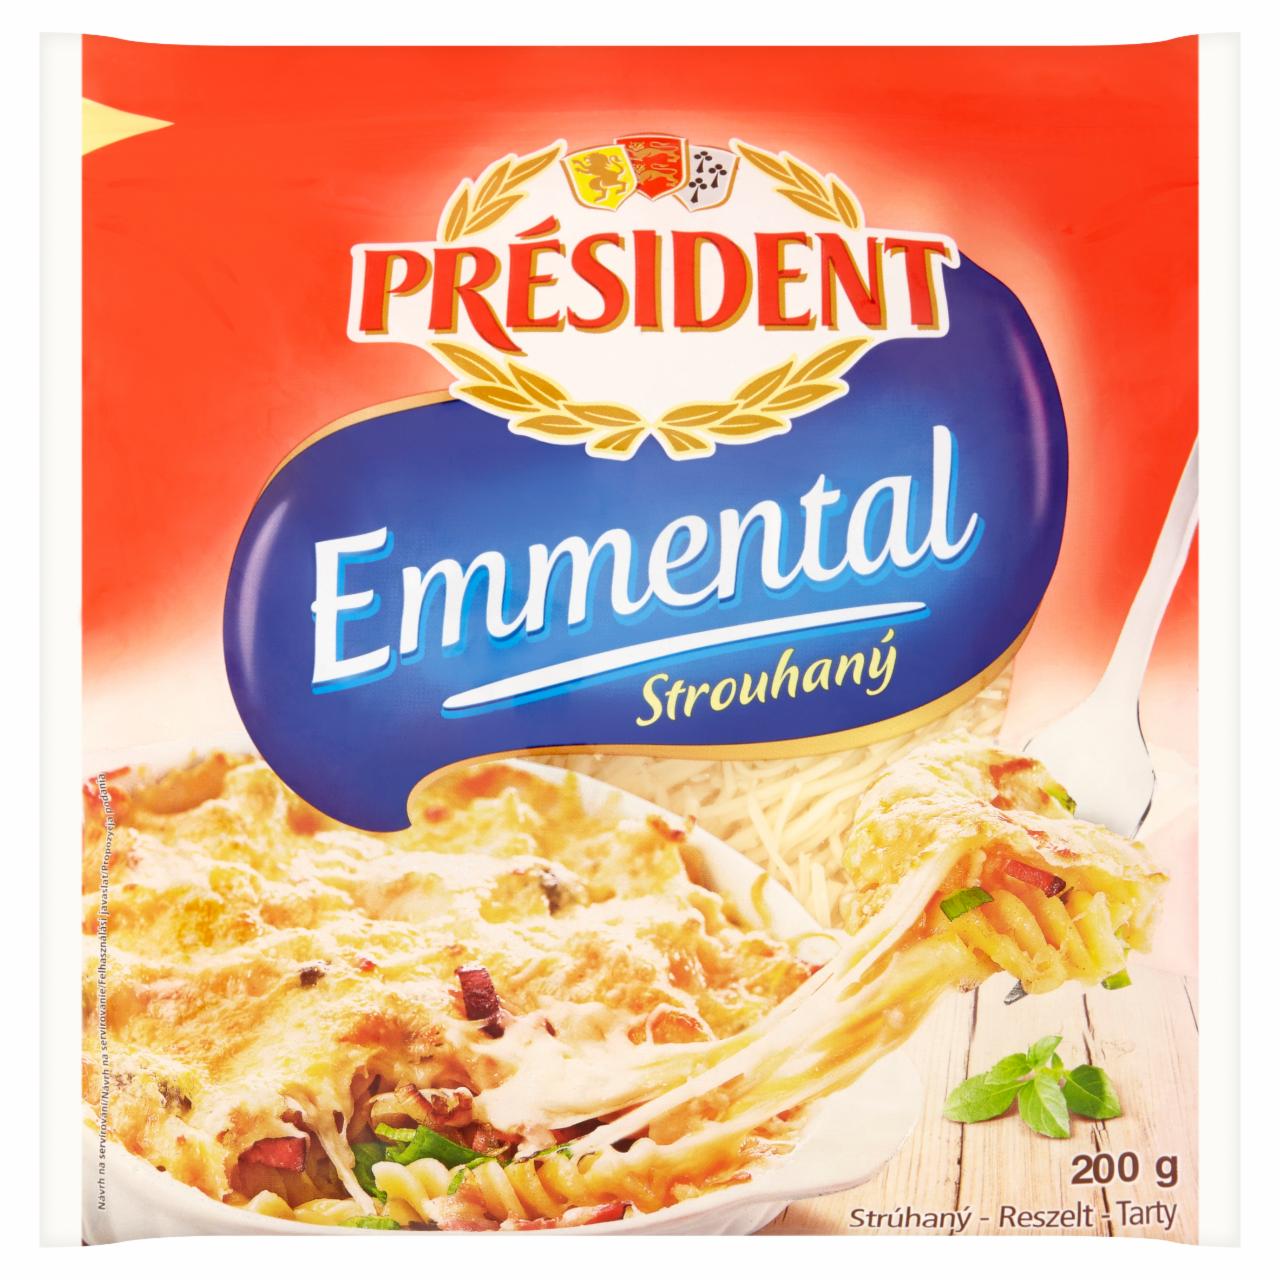 Képek - Président Emmental zsíros kemény reszelt sajt 200 g